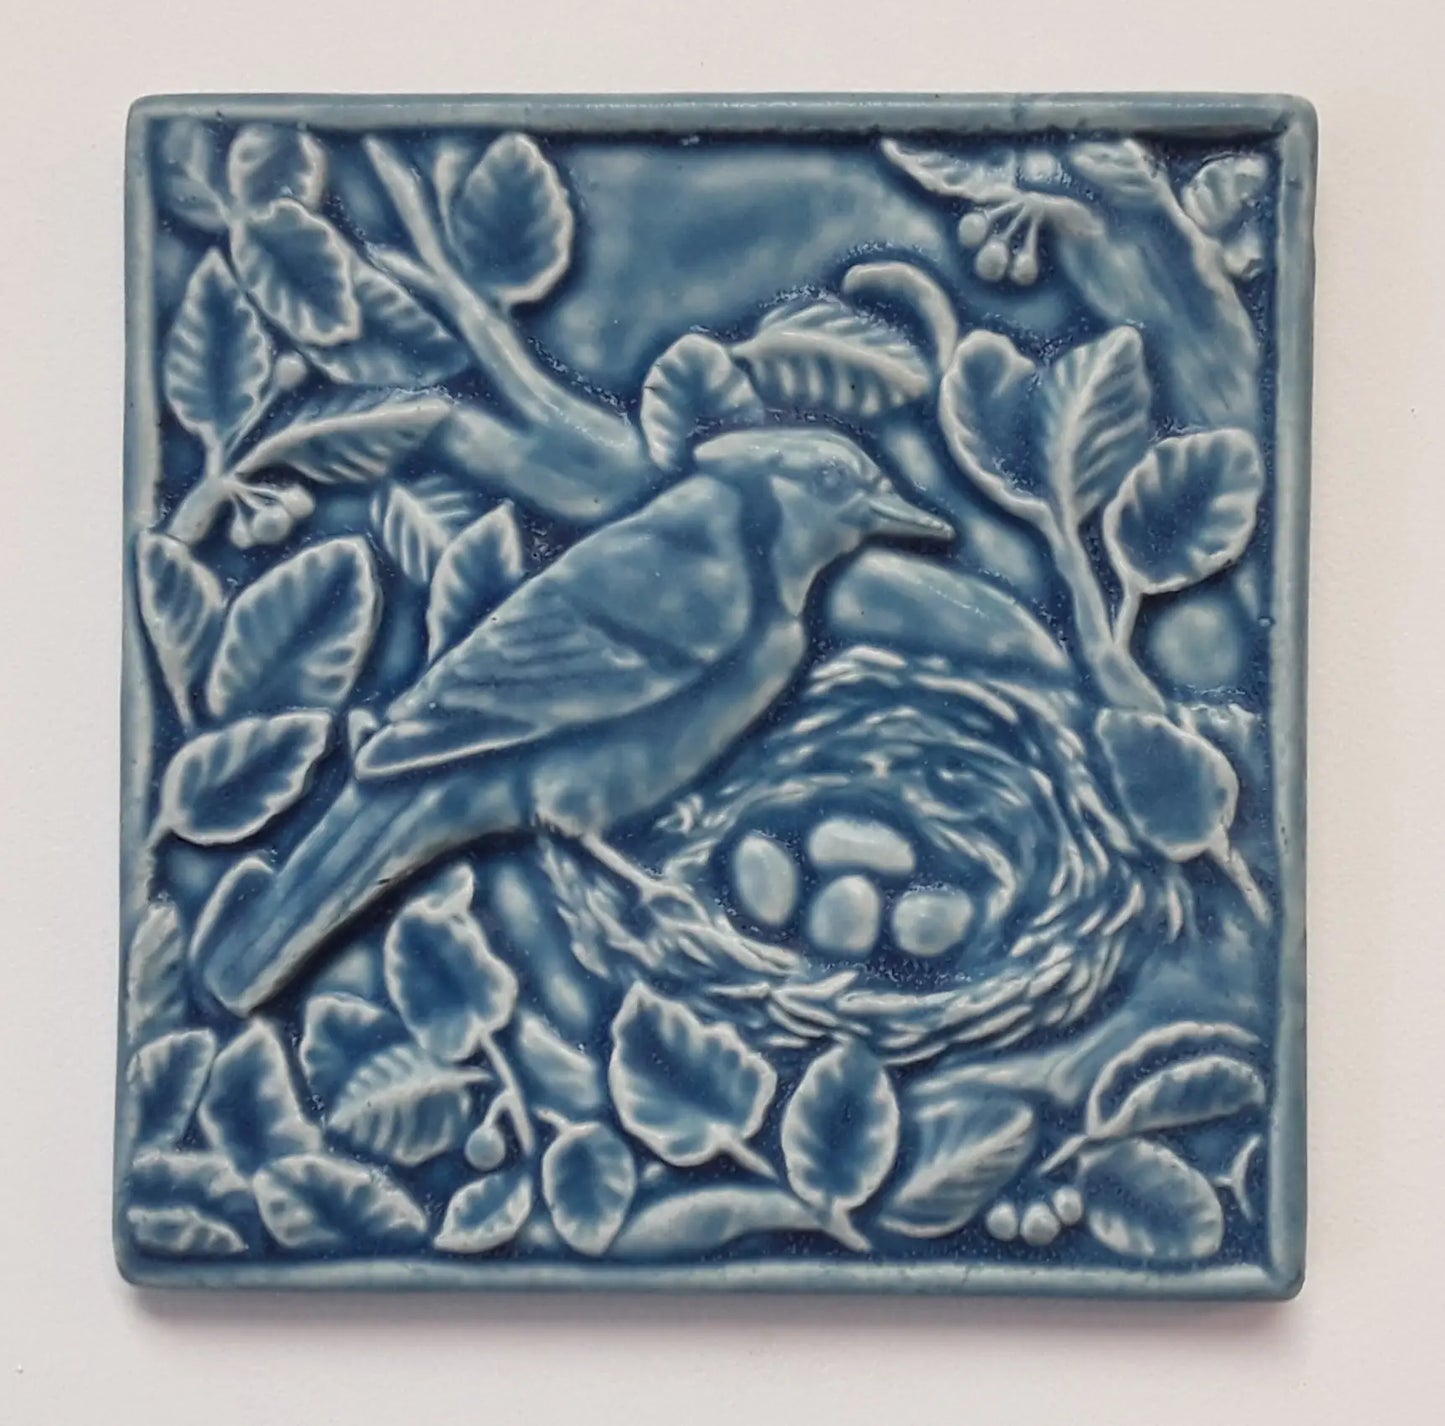 nesting blue jay whistling frog ceramic art tile